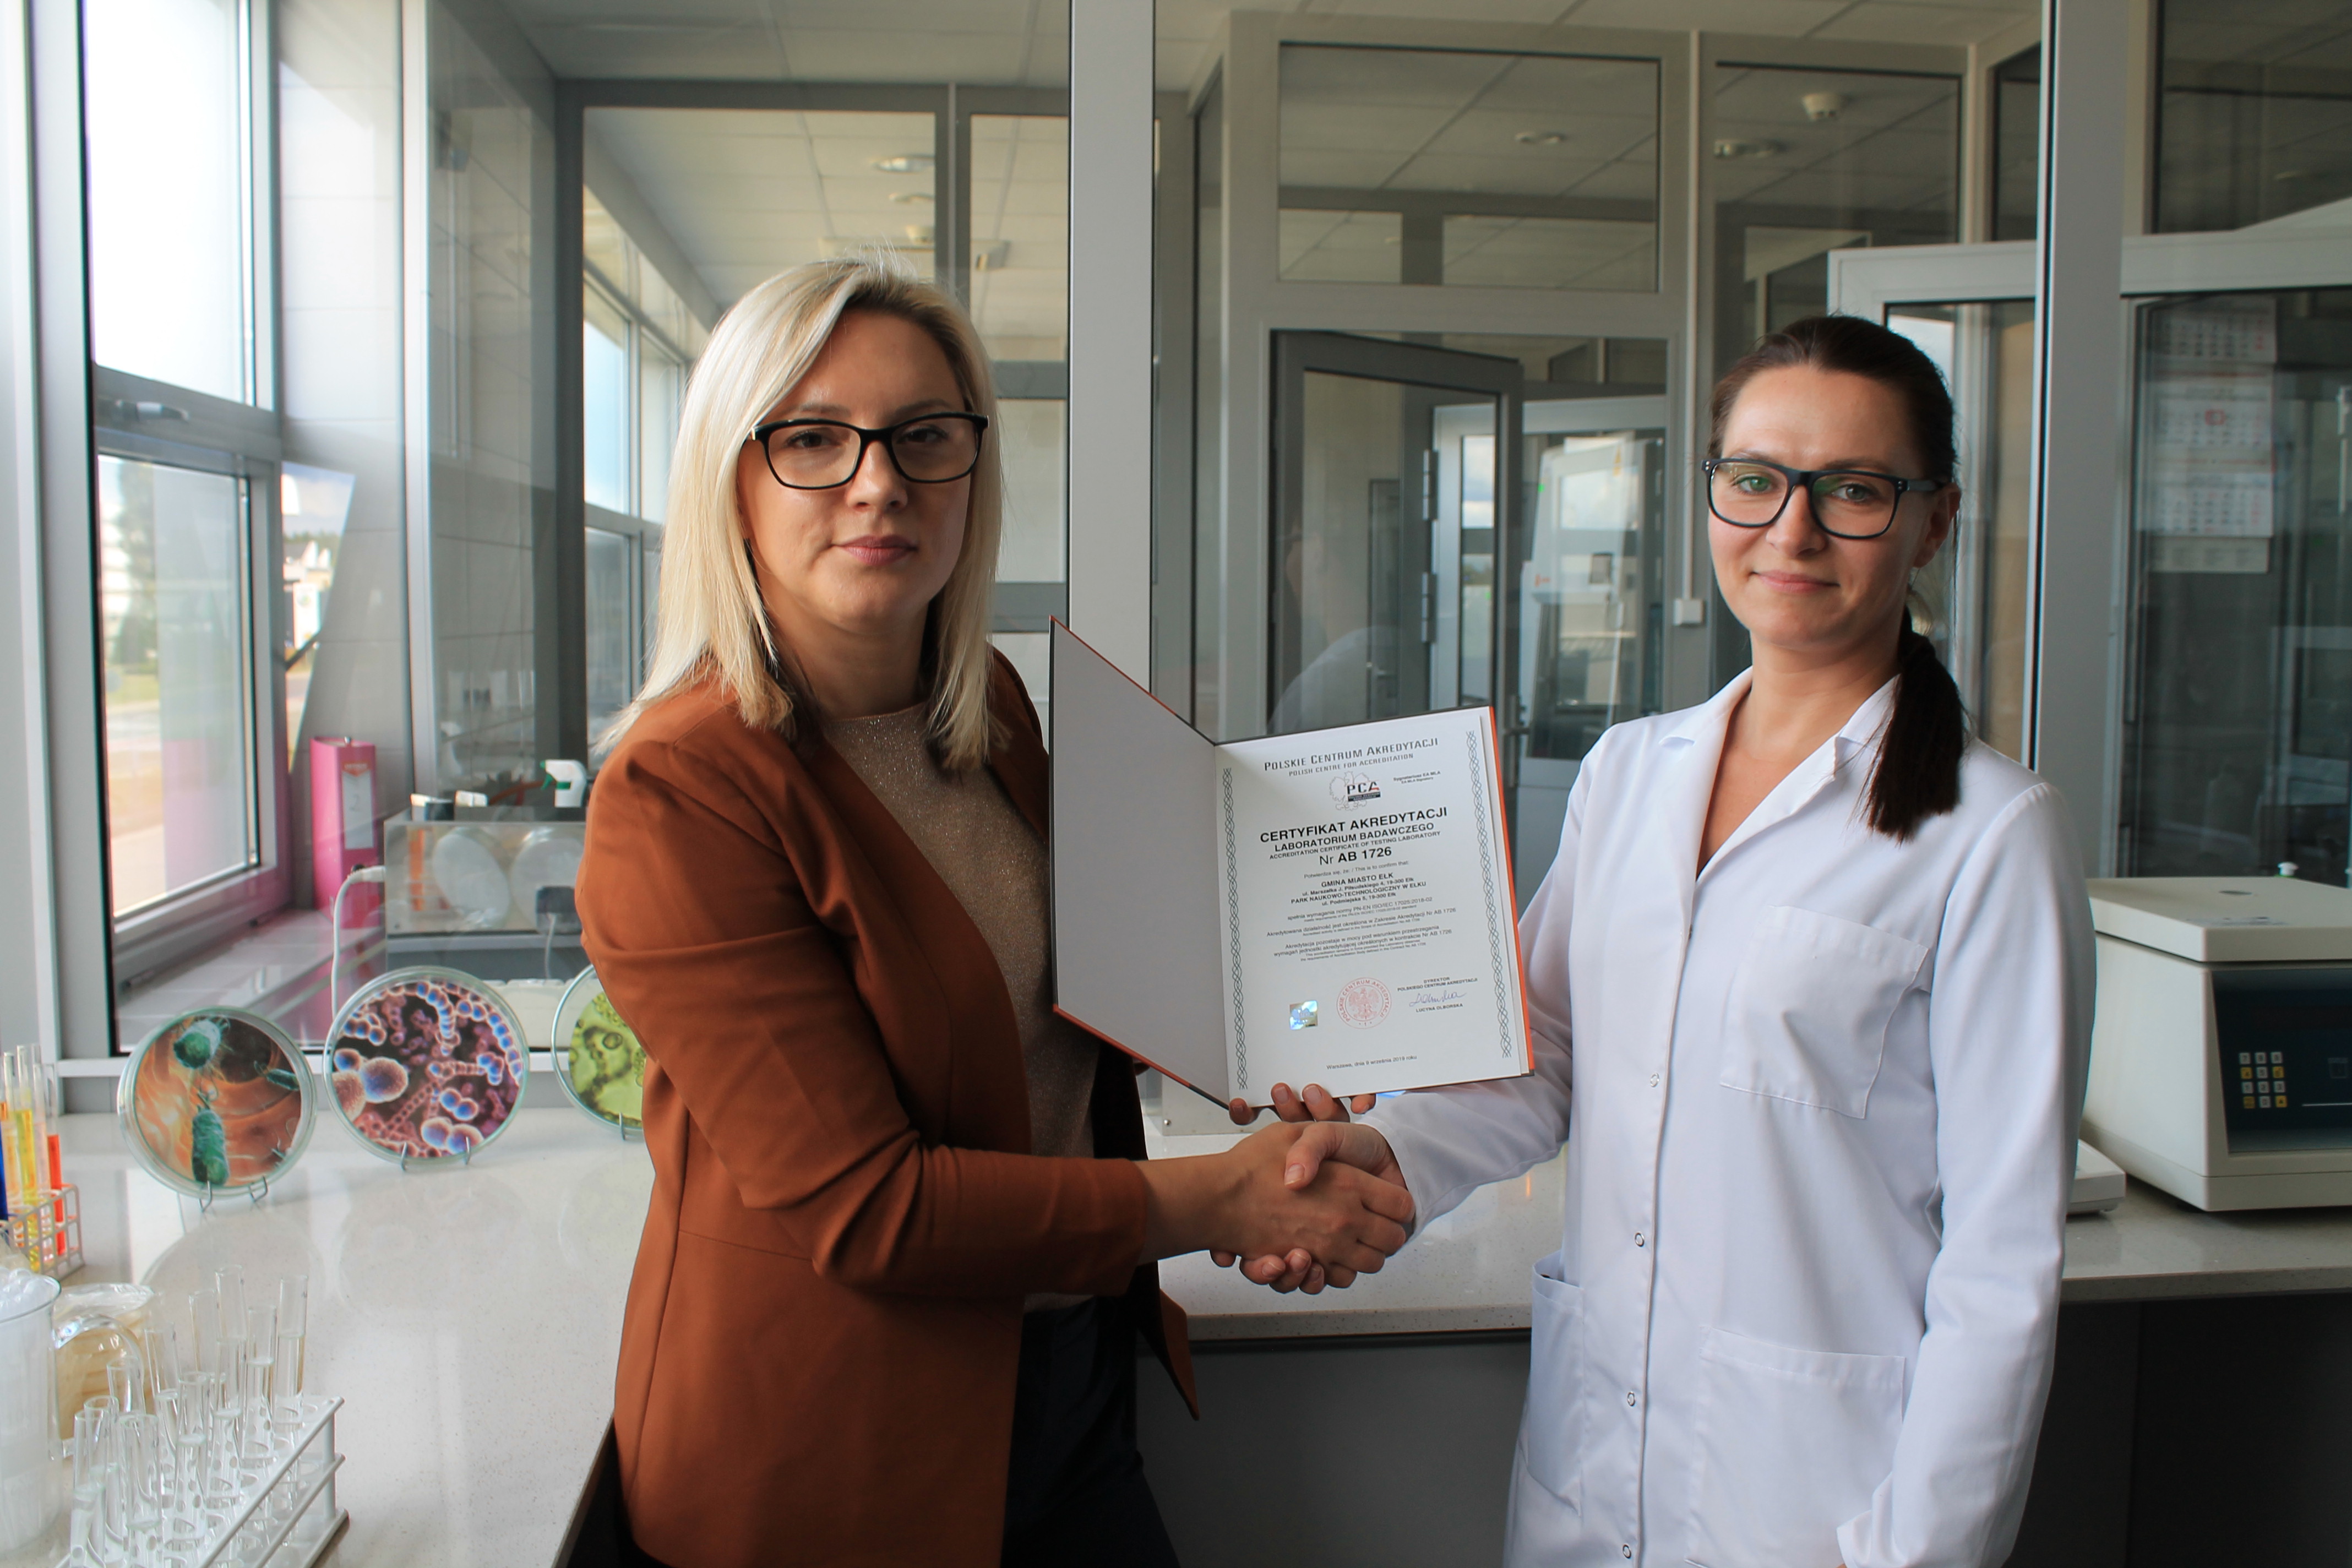 Akredytacja Polskiego Centrum Akredytacji dla Laboratorium Mikrobiologicznego PNT w Ełku